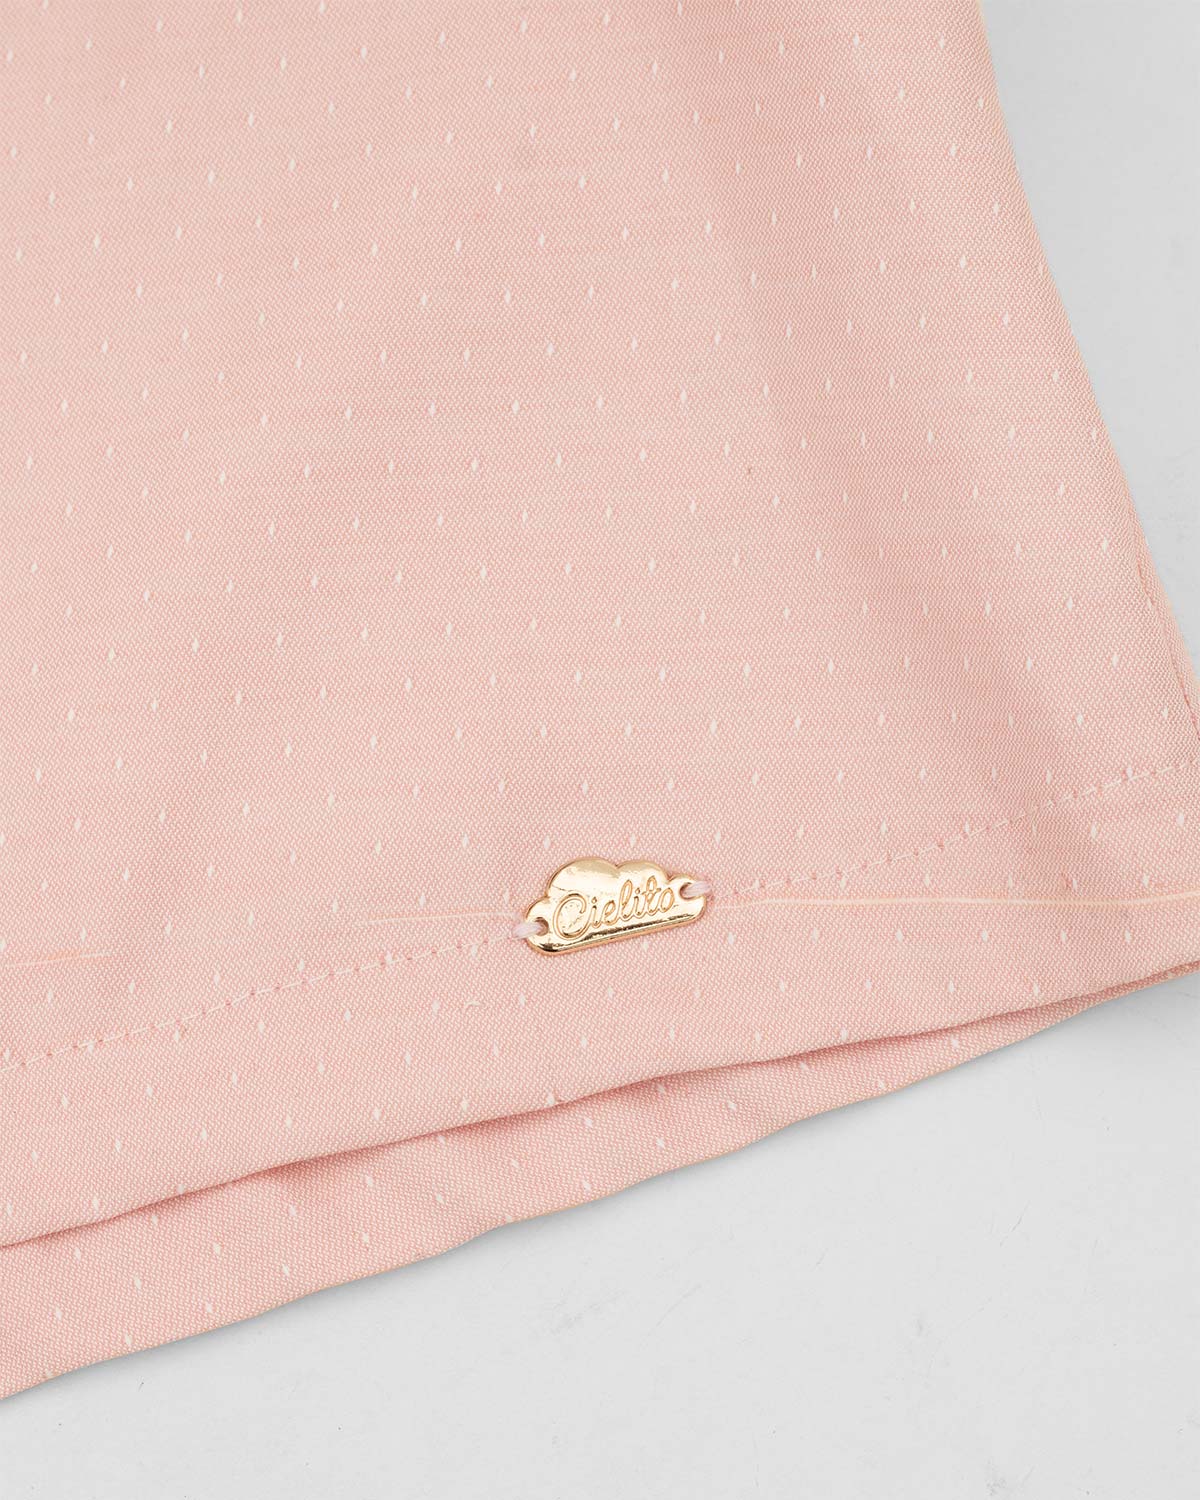 Blusa palo de rosa con boleros y botonadura en espalda para niña